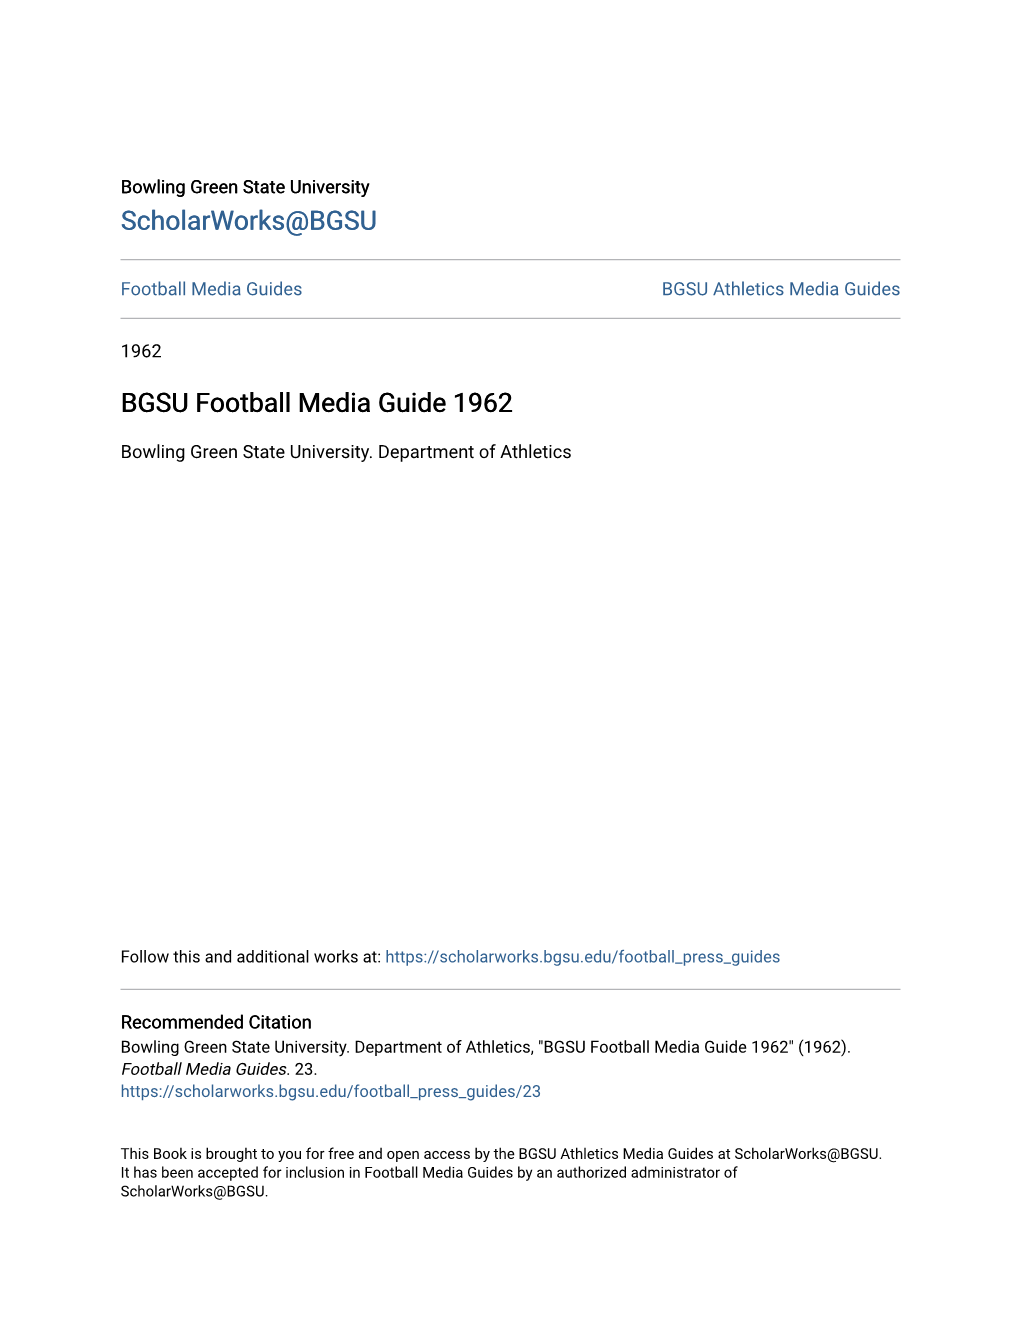 BGSU Football Media Guide 1962